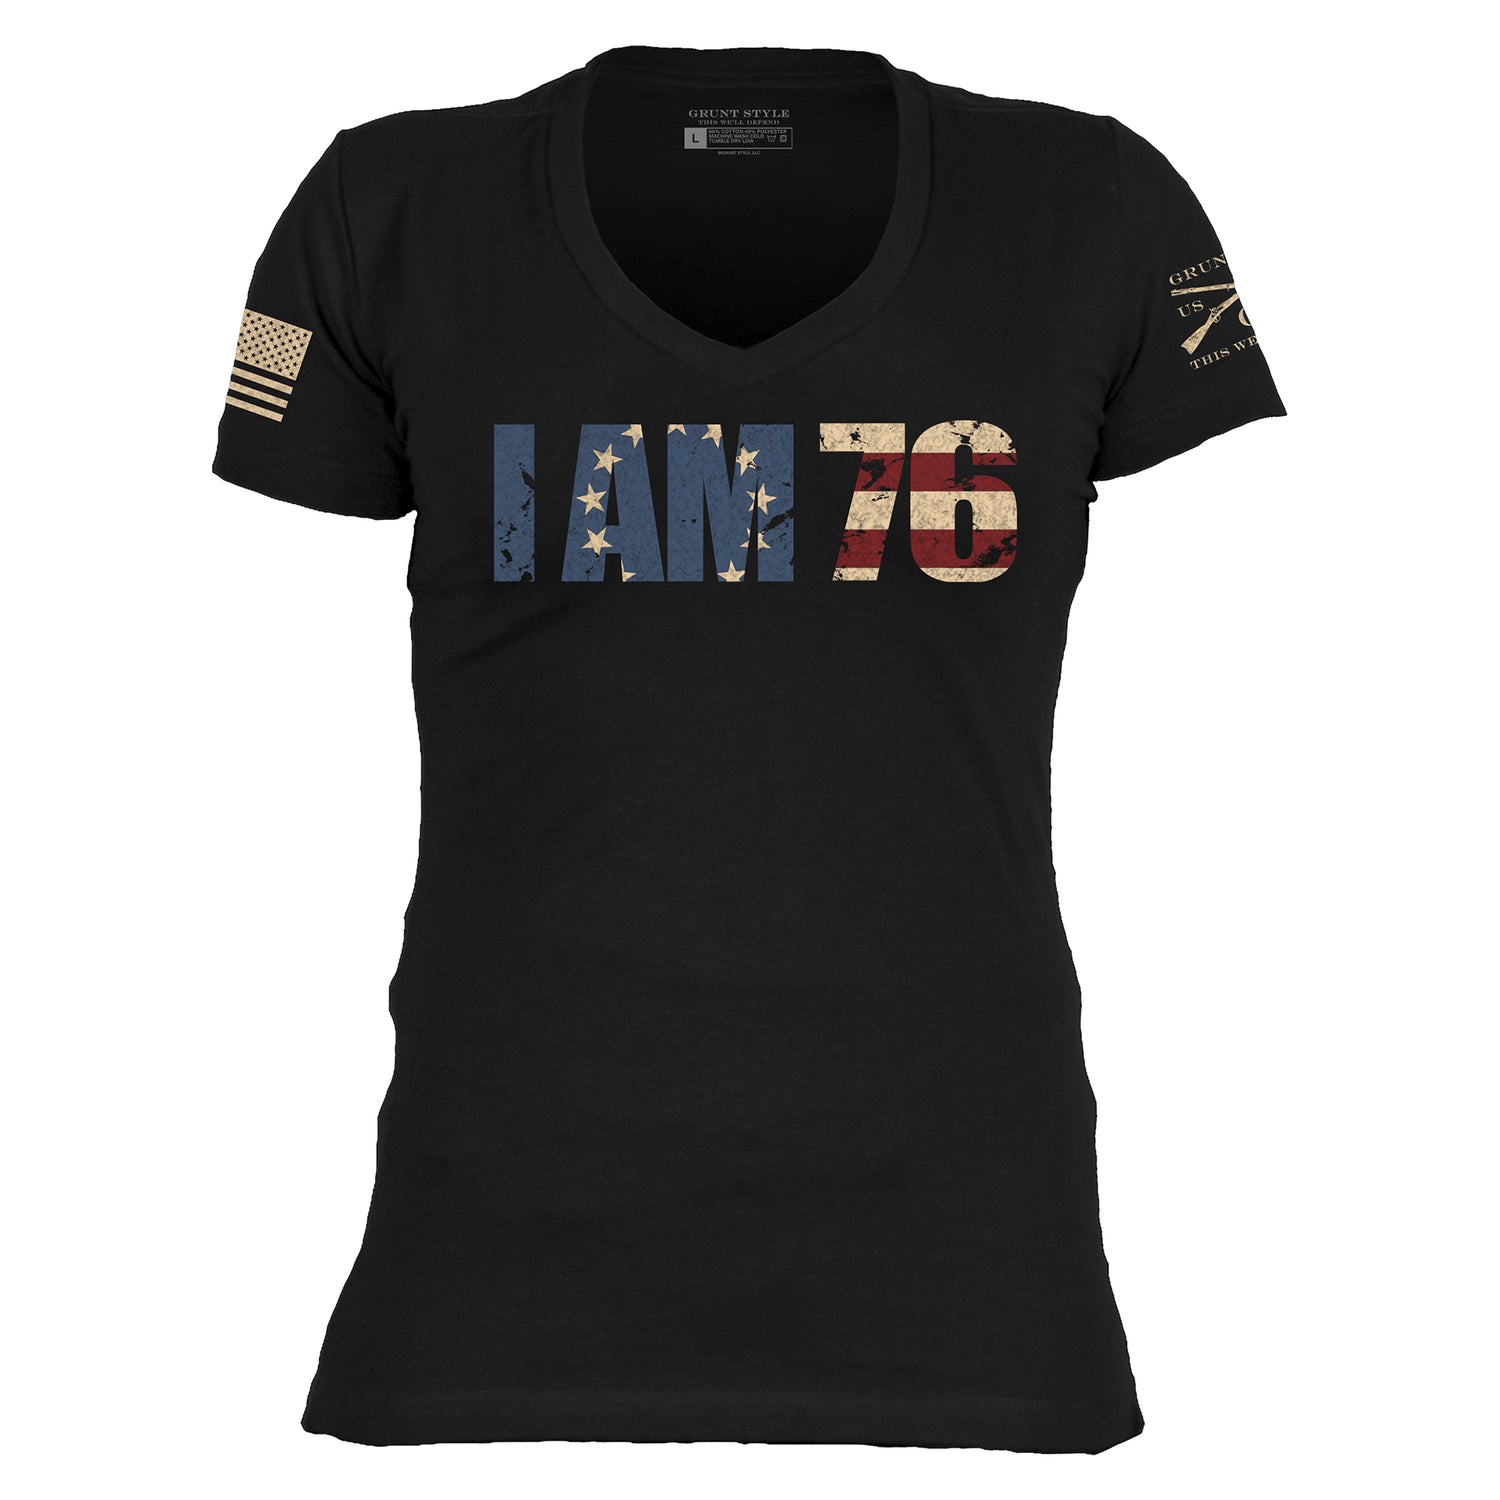 Women's Patriotic T-Shirt - I am 76 